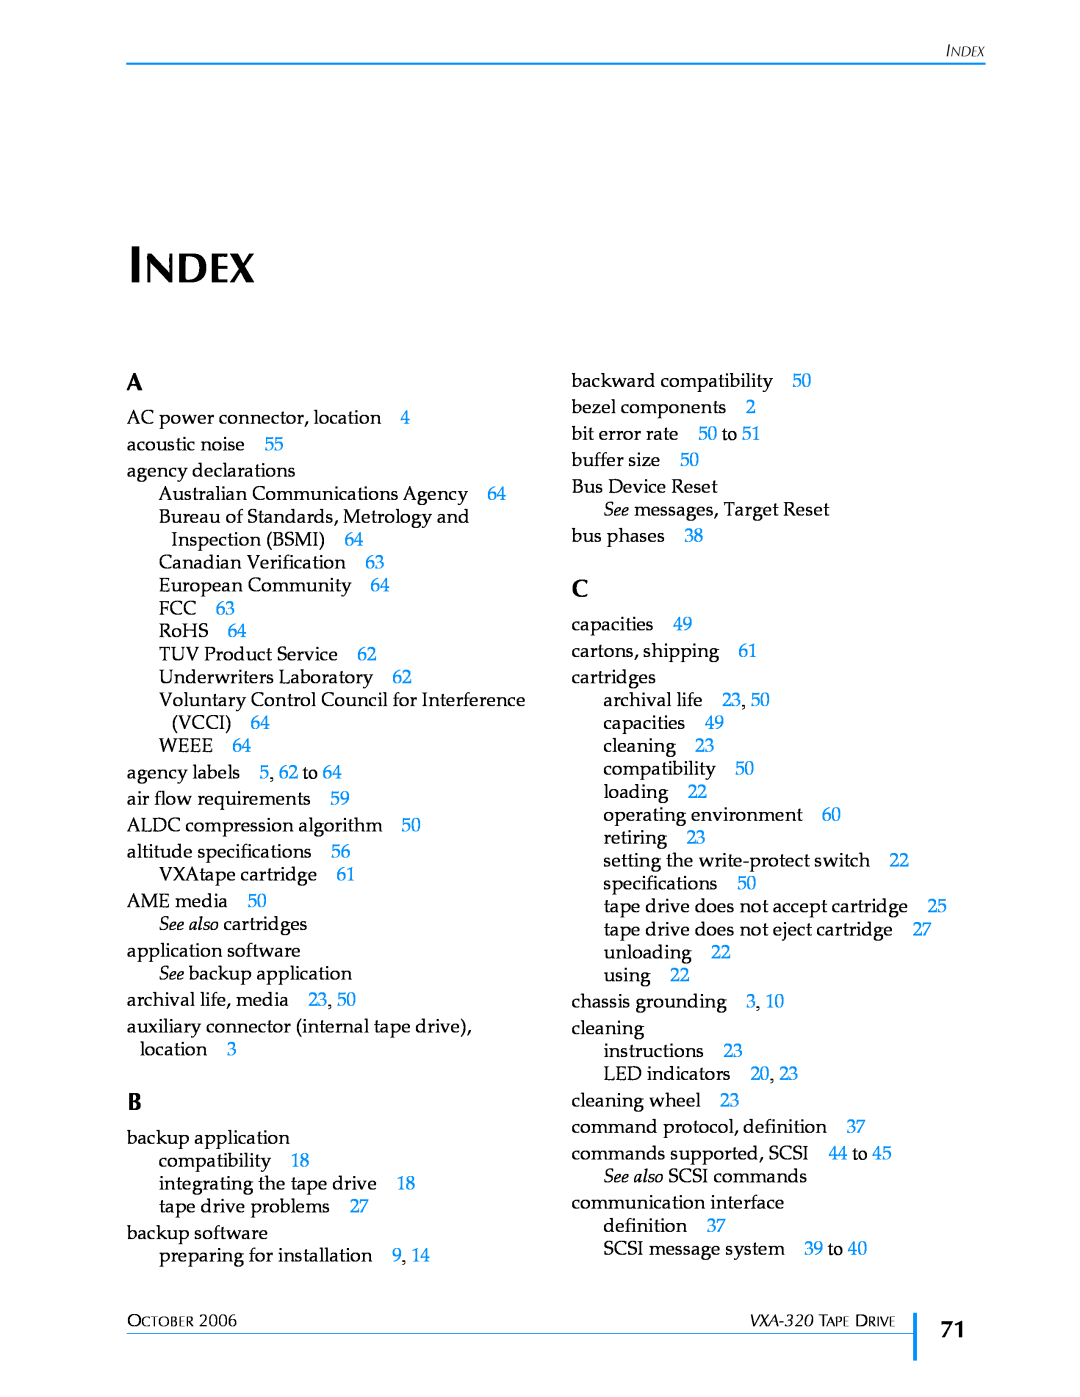 Tandberg Data VXA-320 (VXA-3) manual Index 